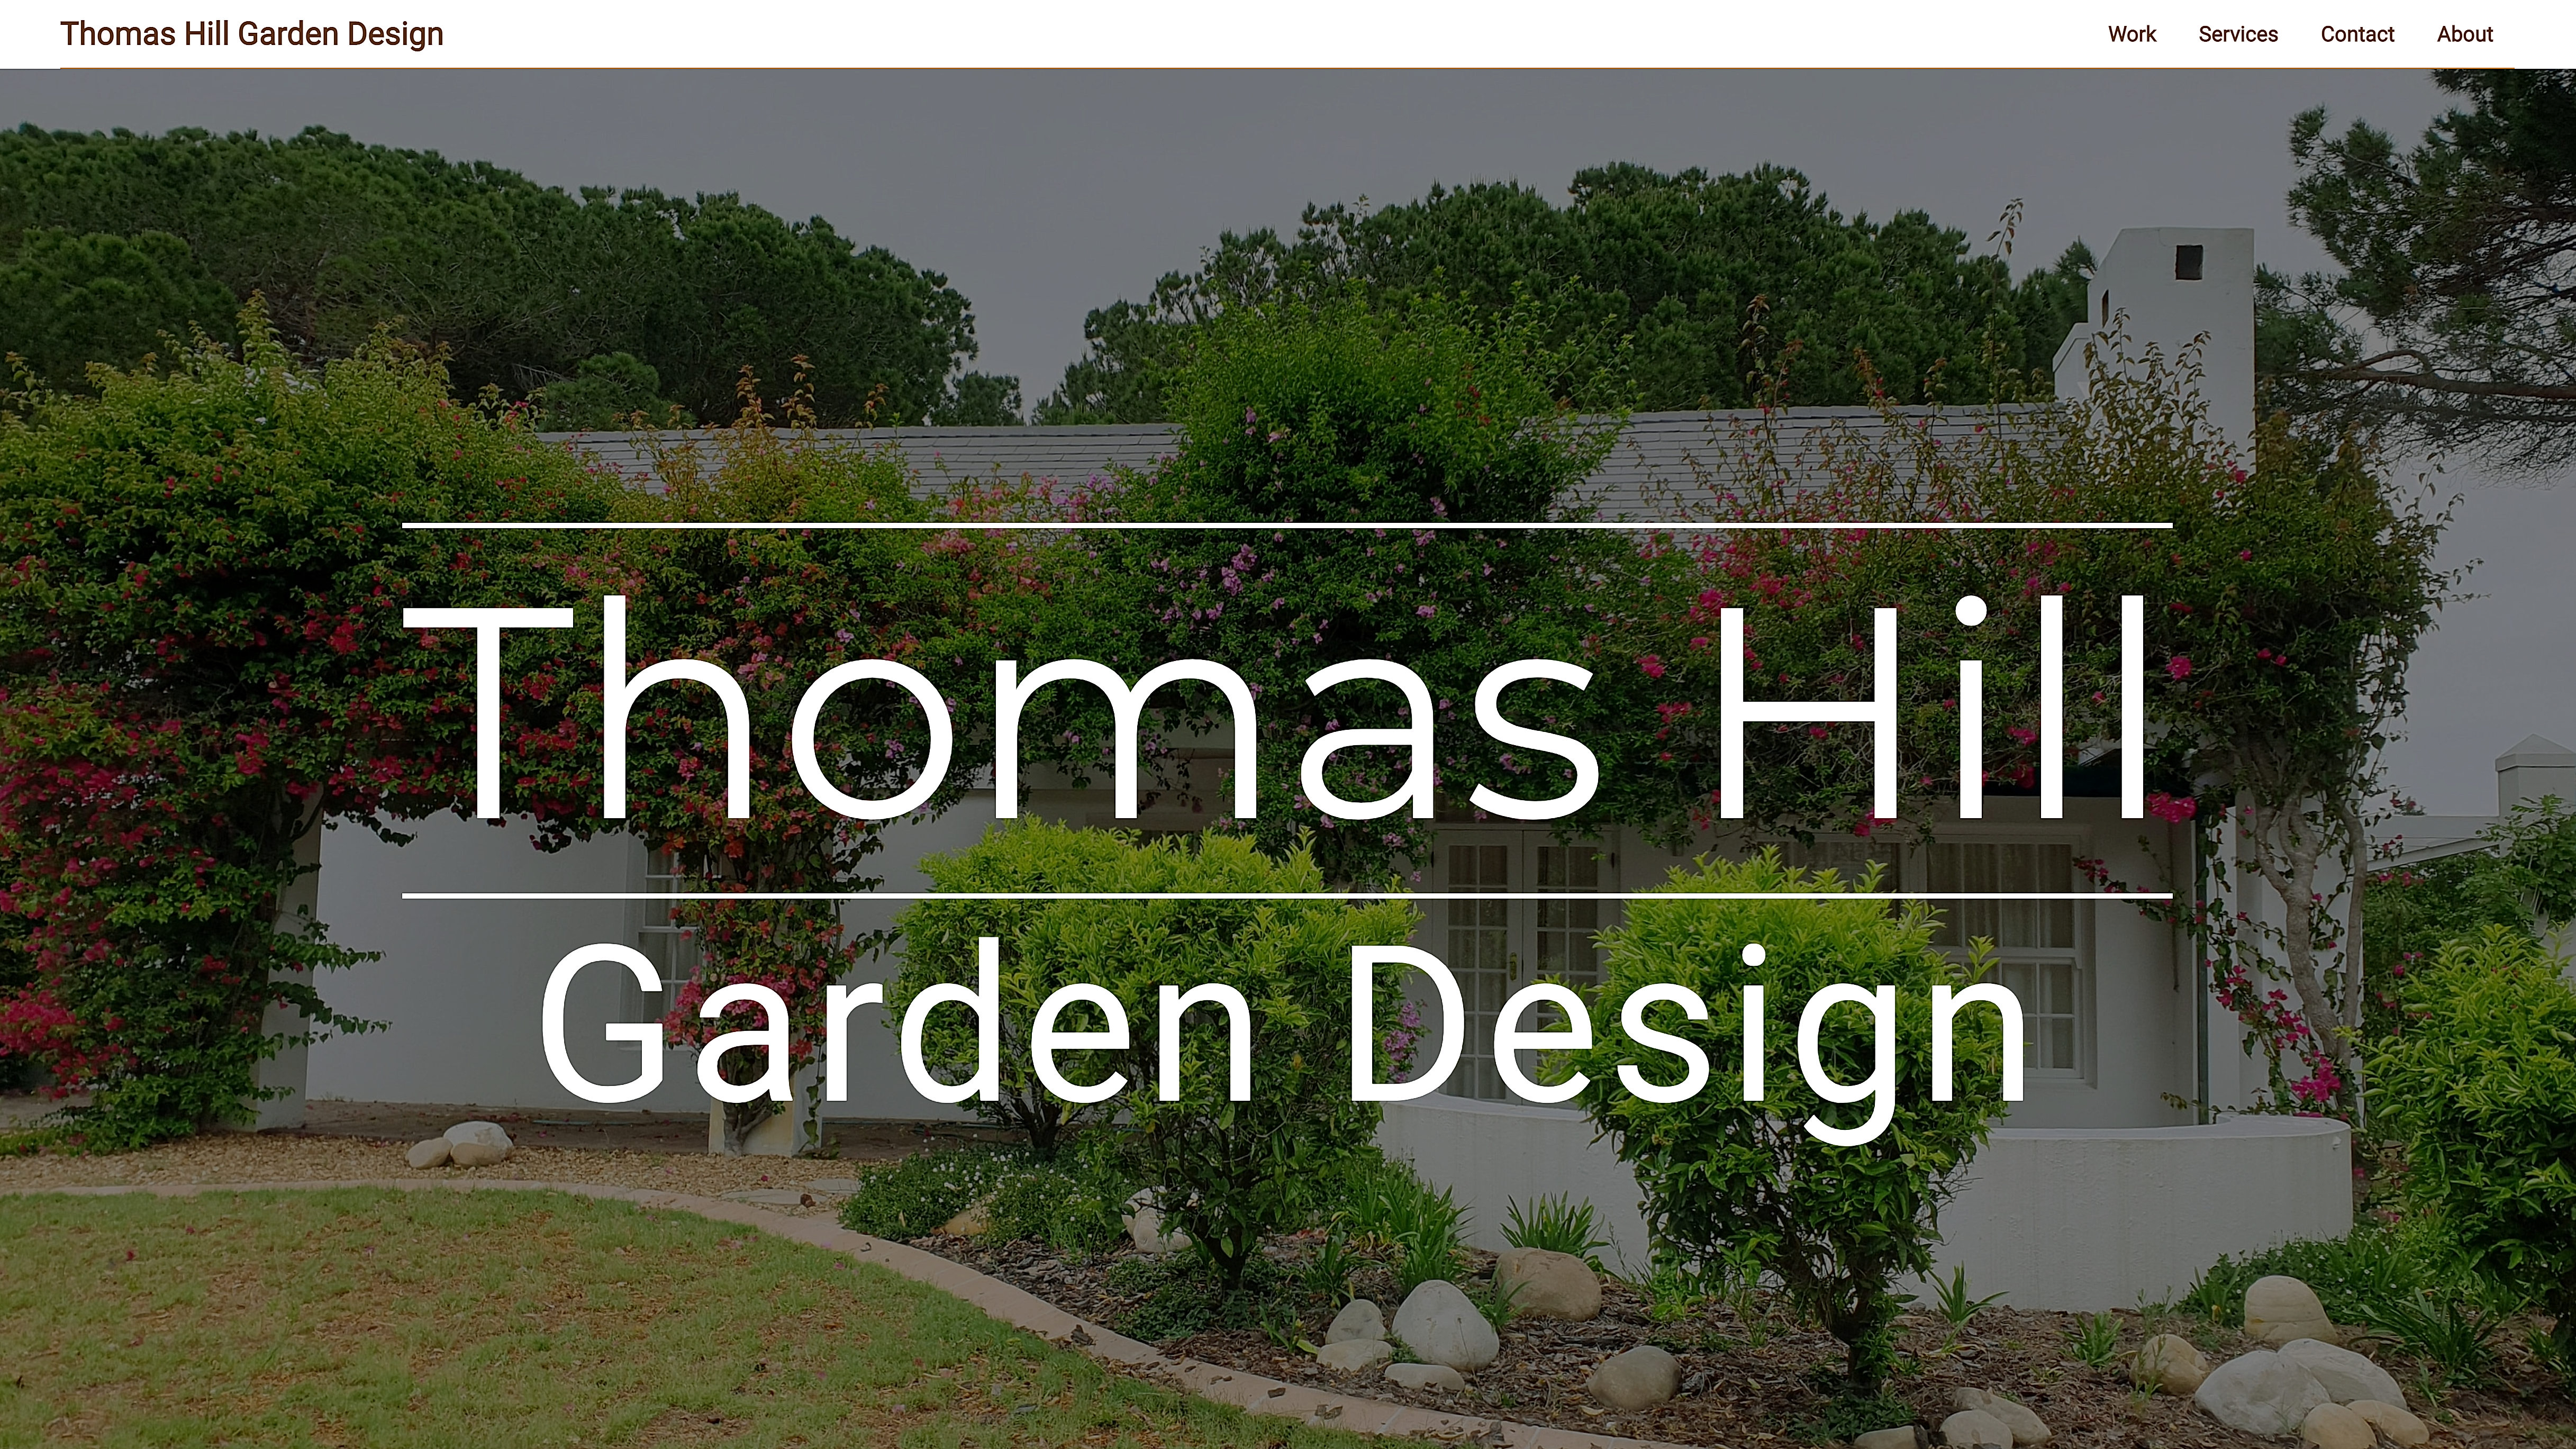 Thomas Hill Garden Design